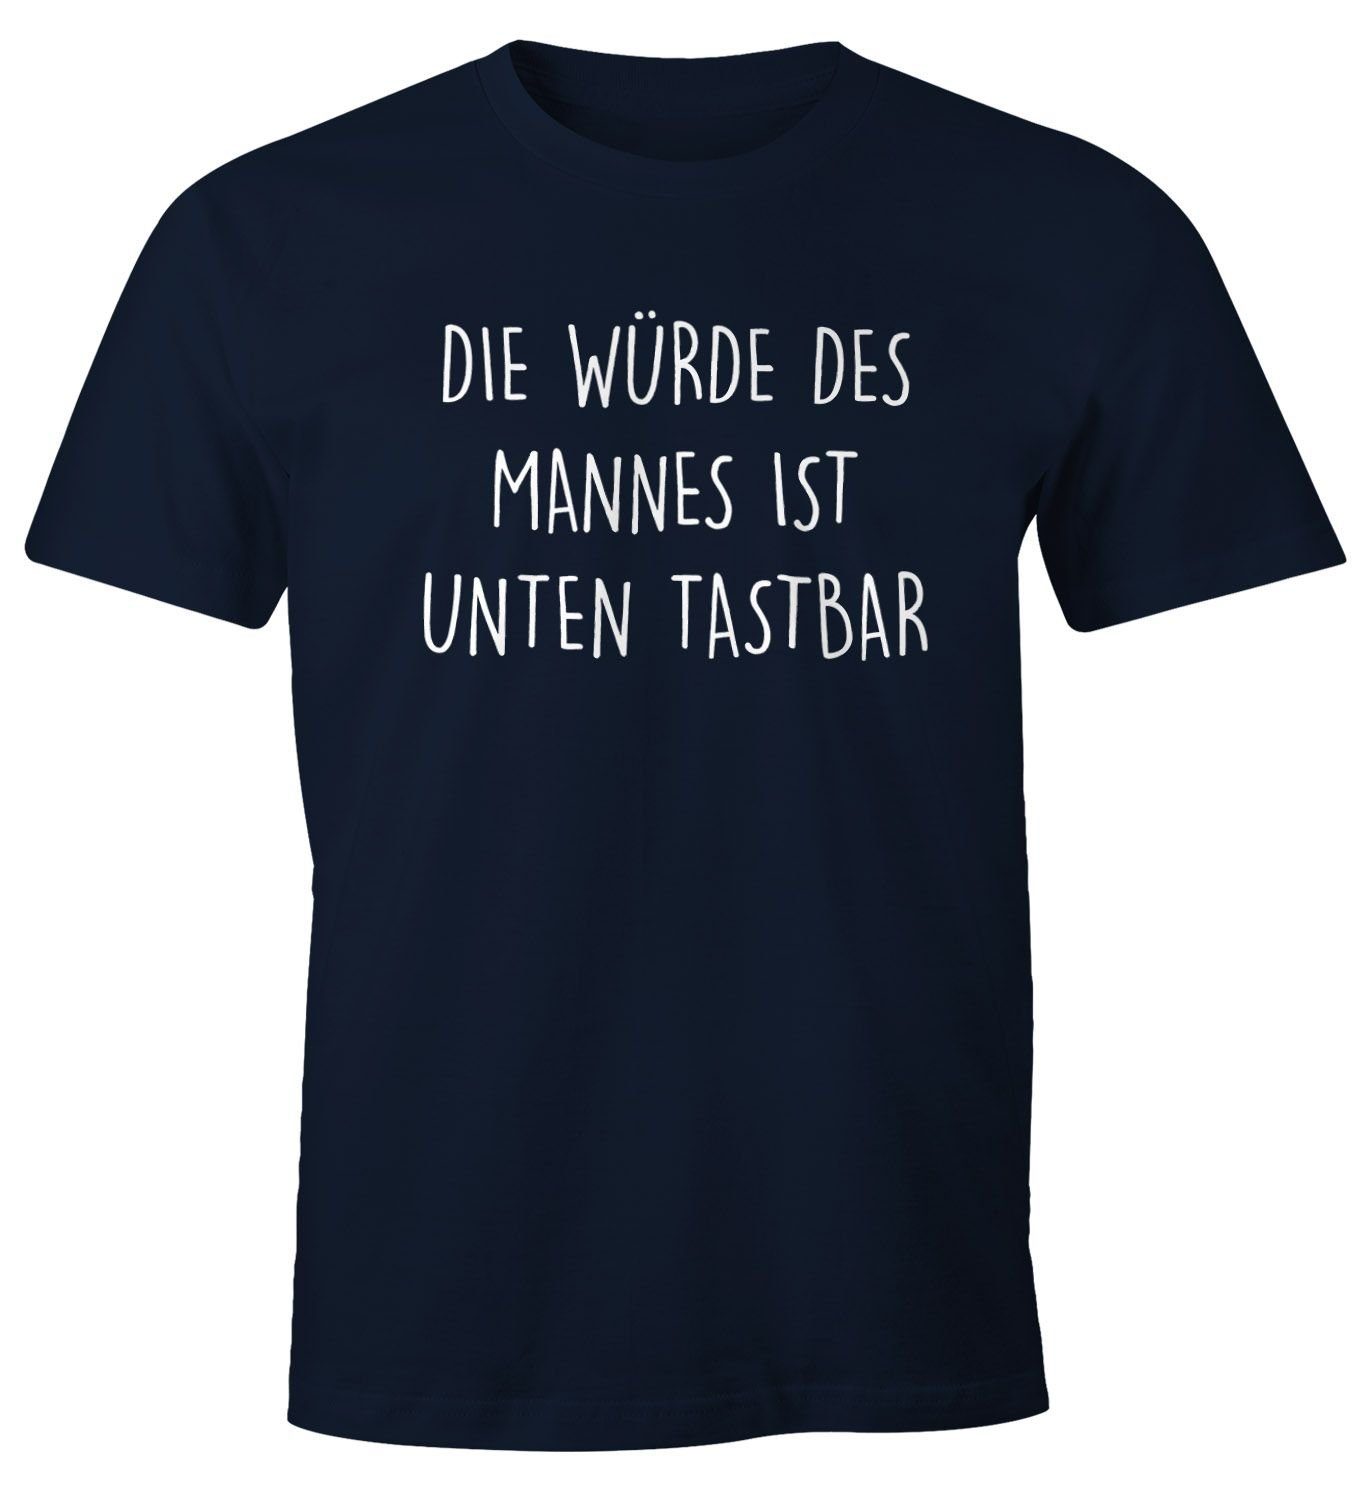 MoonWorks Print-Shirt Lustiges Herren T-Shirt mit Spruch Die Würde des Mannes ist unten tastbar Fun-Shirt Moonworks® mit Print navy